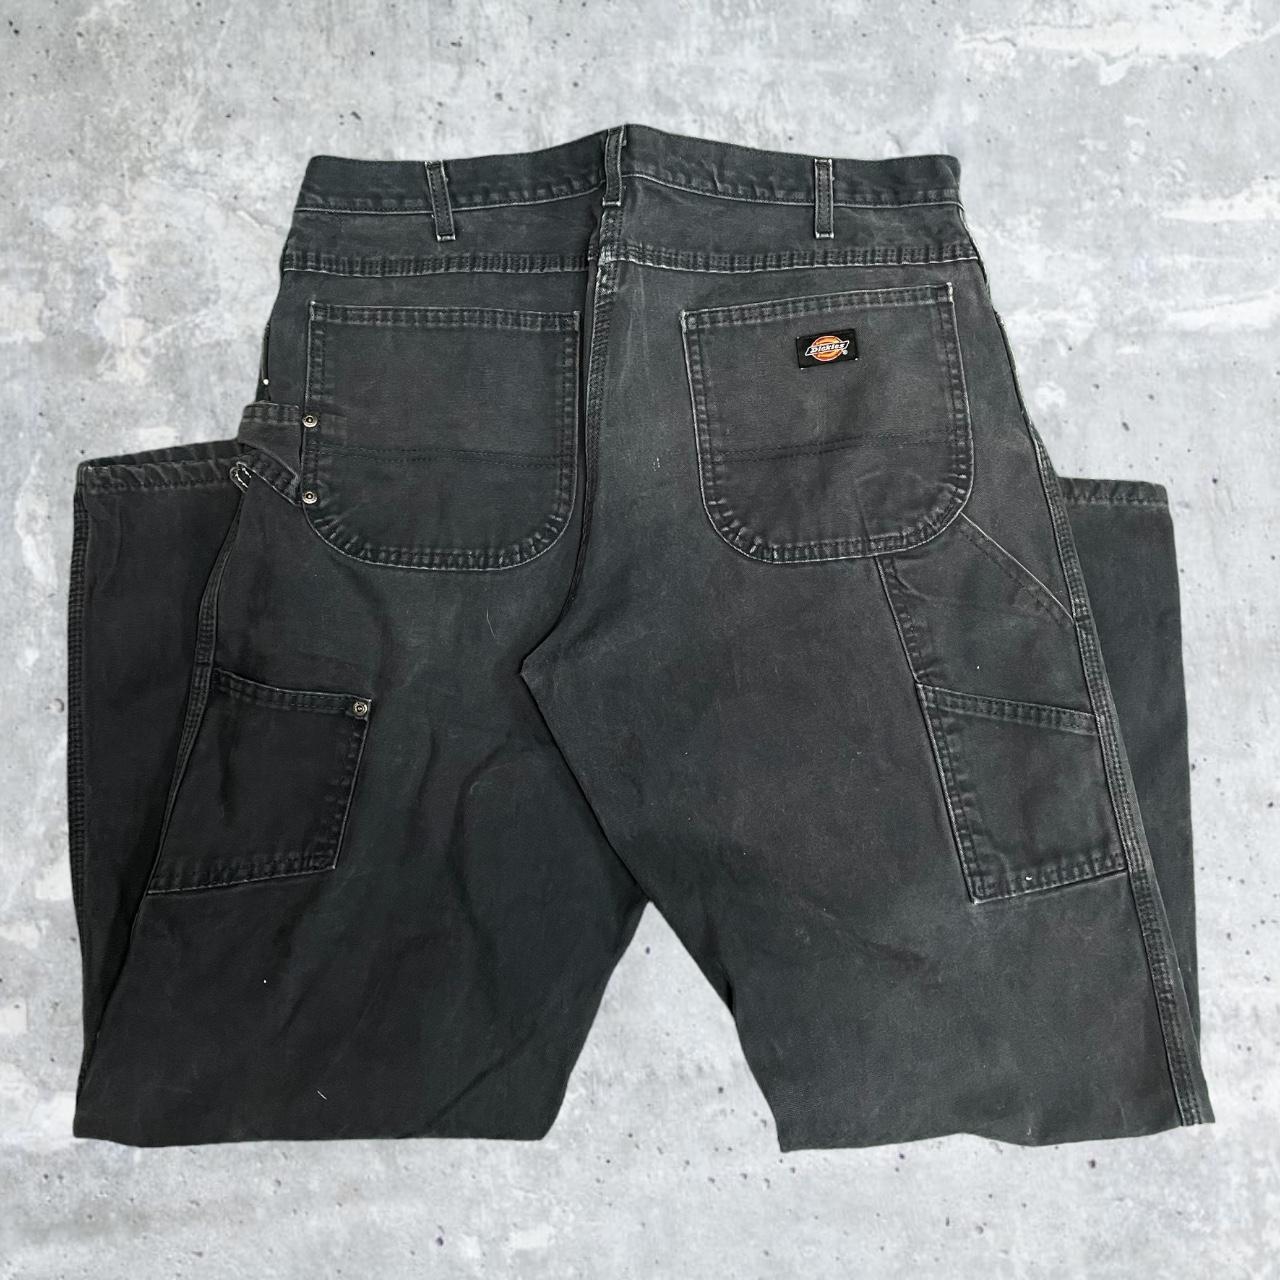 Vintage Dickies Carpenter Pants in a Size 36x32!... - Depop